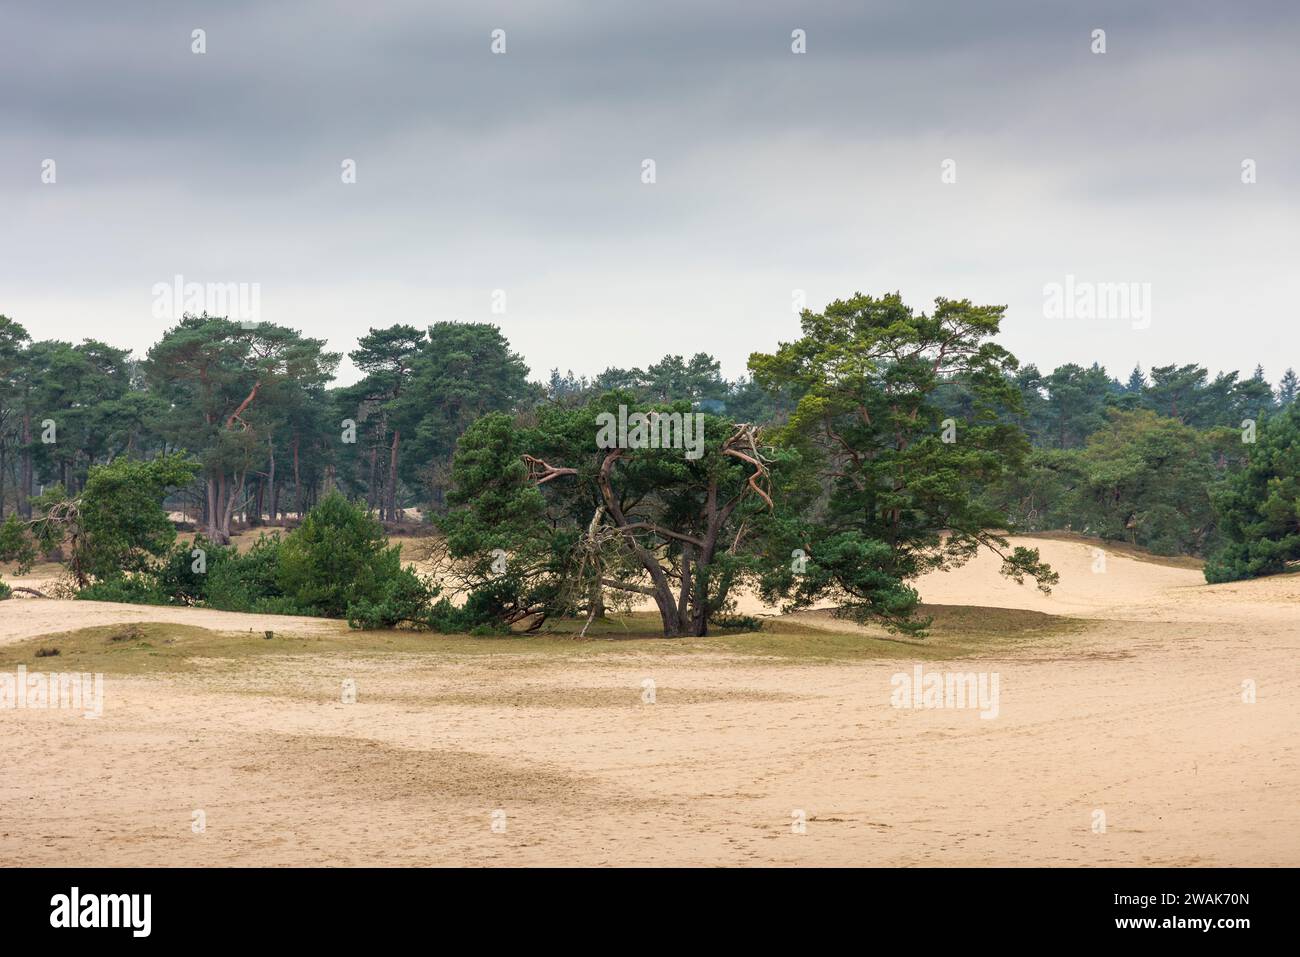 Dunes de sable dans la forêt de la réserve naturelle de Soestduinen entre Soest et Amersfoort, pays-Bas. Banque D'Images